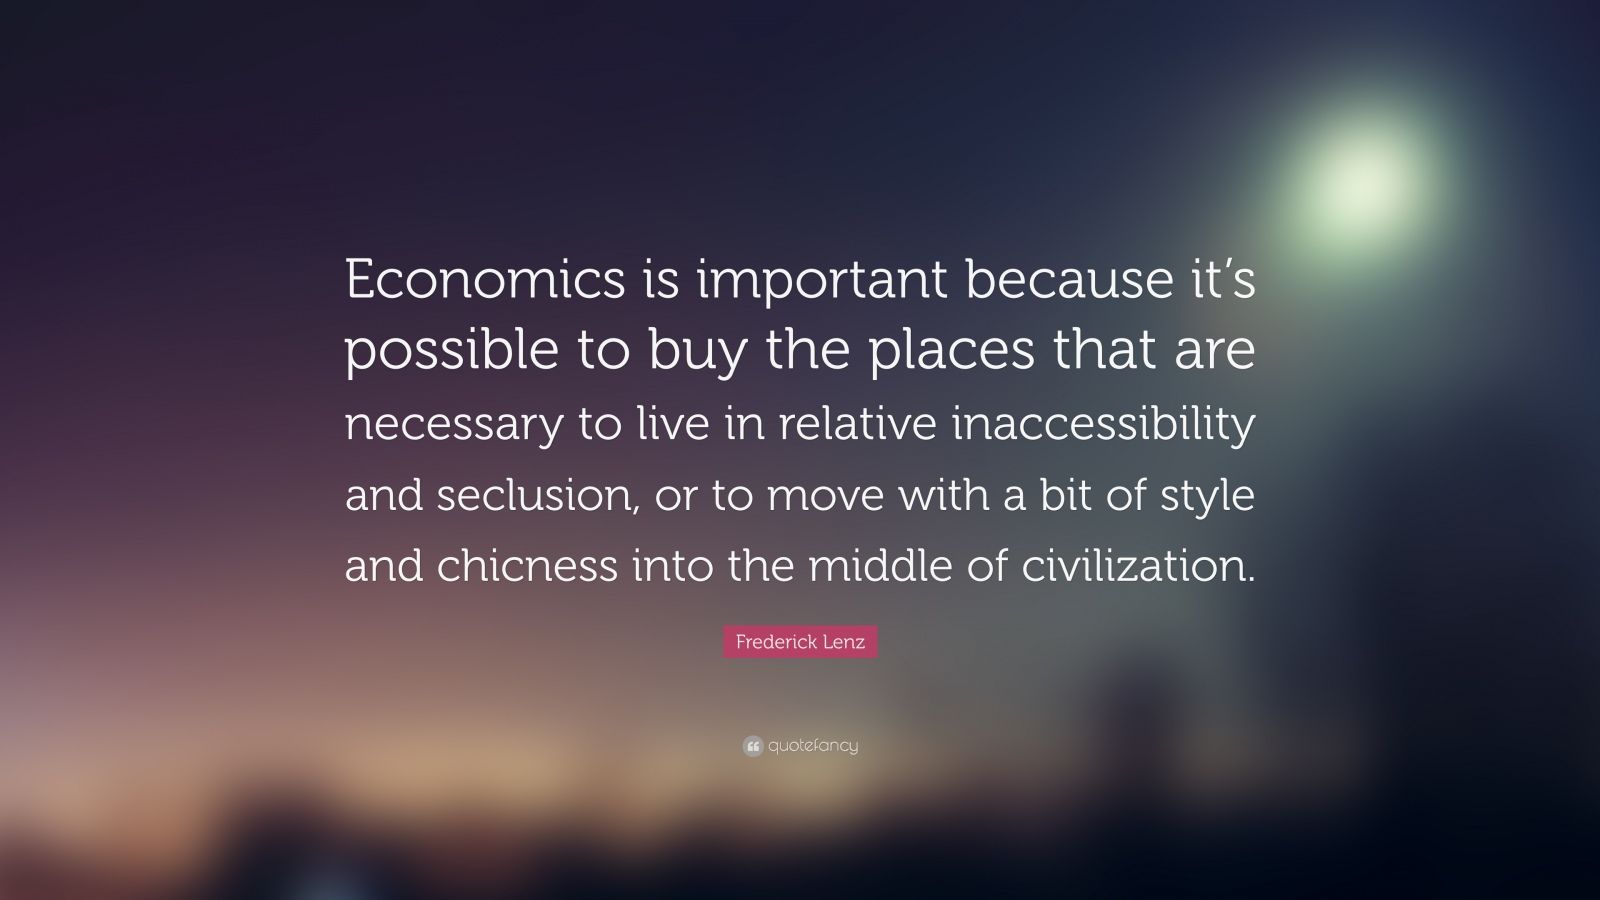 sam smith quotes economics